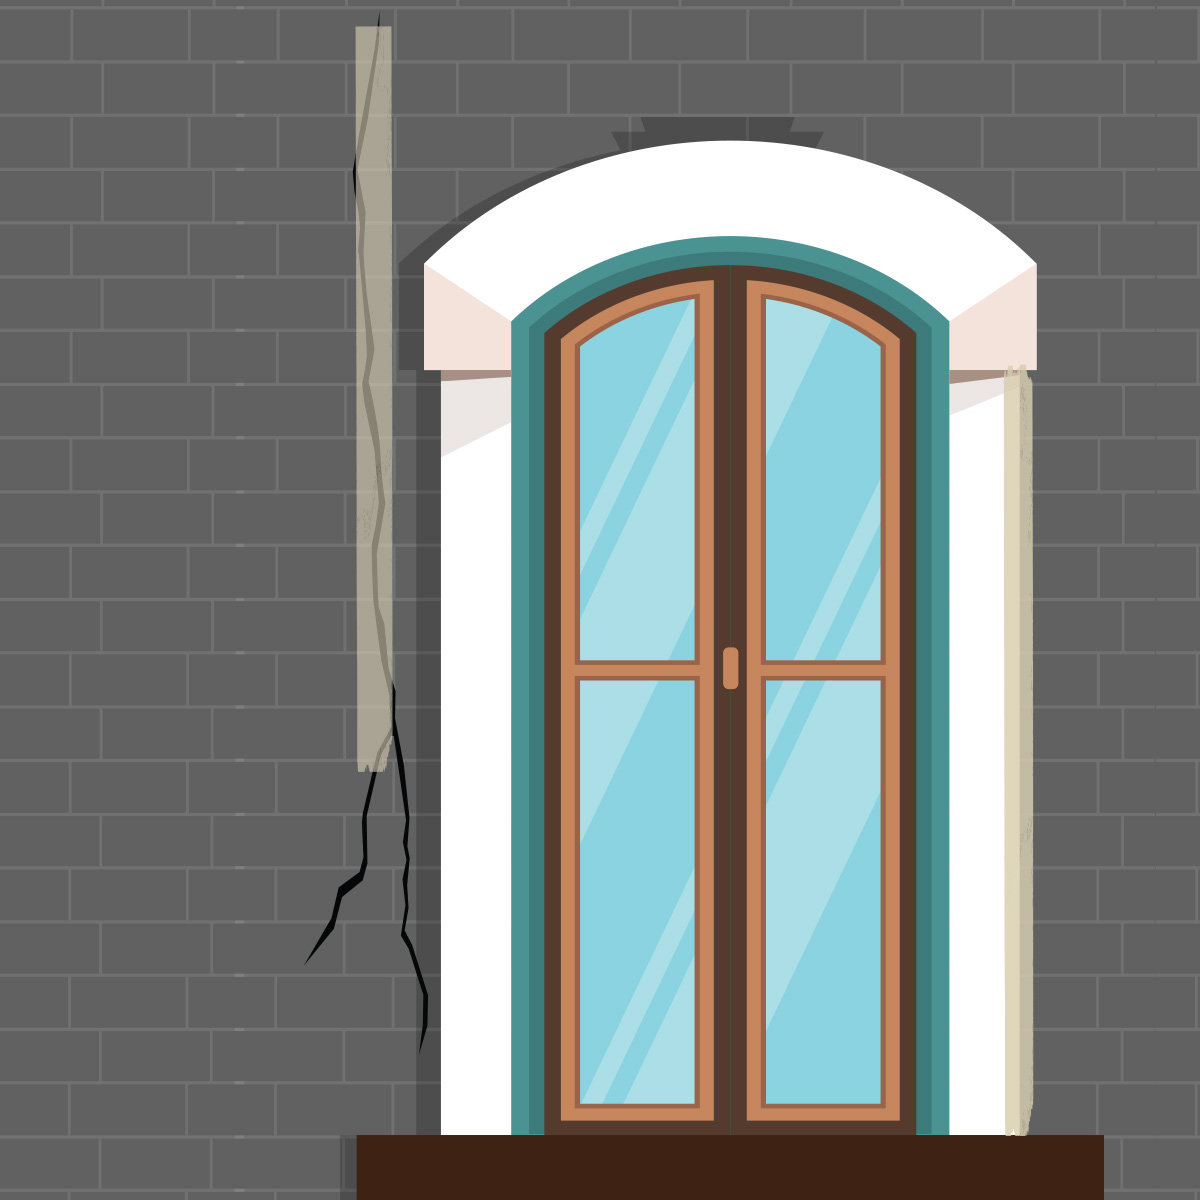 Çatlak Bandı <p>* Mükemmel izolasyon pencere pervazlarının birleşim yerlerinde kullanılır. çatlakları kapatarak sızıntıyı ve soğuk girişini engeller<br />
<br />
* Bondit çatlak bandı, pencere pervazlarında, kapılarda, çatı ve bacaların birleşim yerlerinde, oluklarda suyun sızmasını engelleyerek güçlü bir yalıtım sağlar. güneş ışınlarından etkilenmez, uzun ömürlüdür ve üzeri boyanabilir.<br />
<br />
* Ultra güçlü yapışma<br />
* Boyanabilir<br />
* Sudan etkilenmez<br />
* Güneşten etkilenmez</p>
